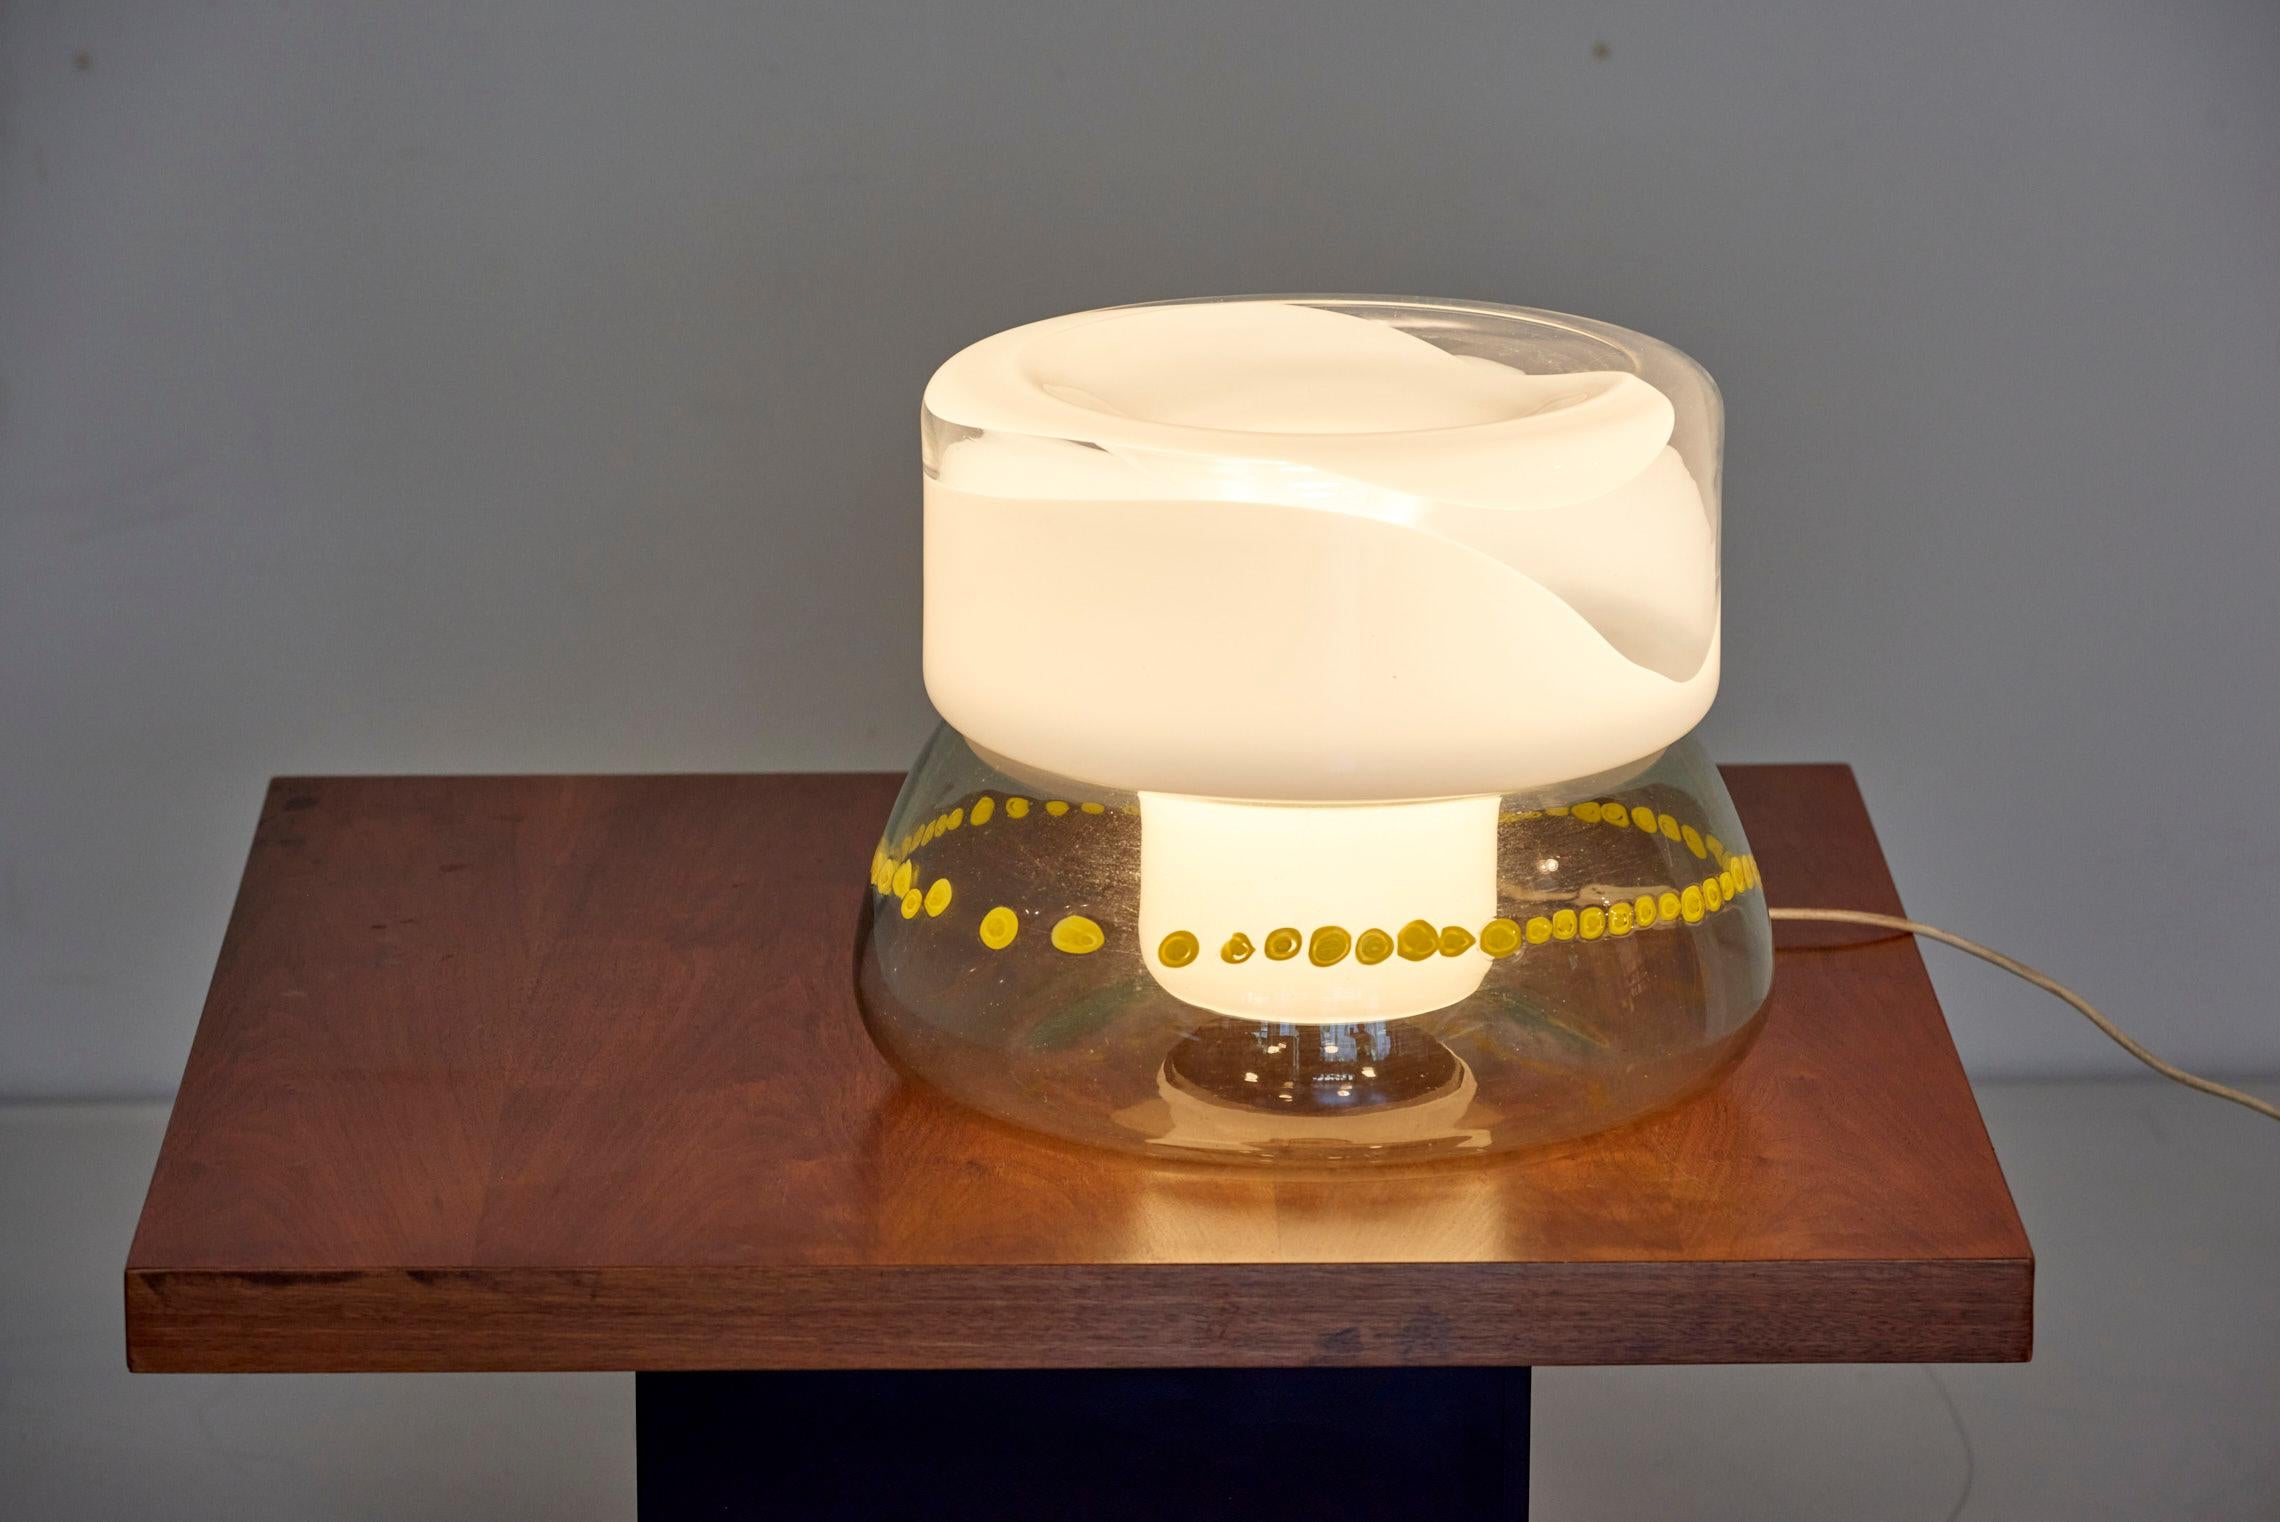 Lampe de table Vistosi, Italie - années 1960
Réalisé en verre de Murano blanc, jaune et transparent.
1x ampoule E27.